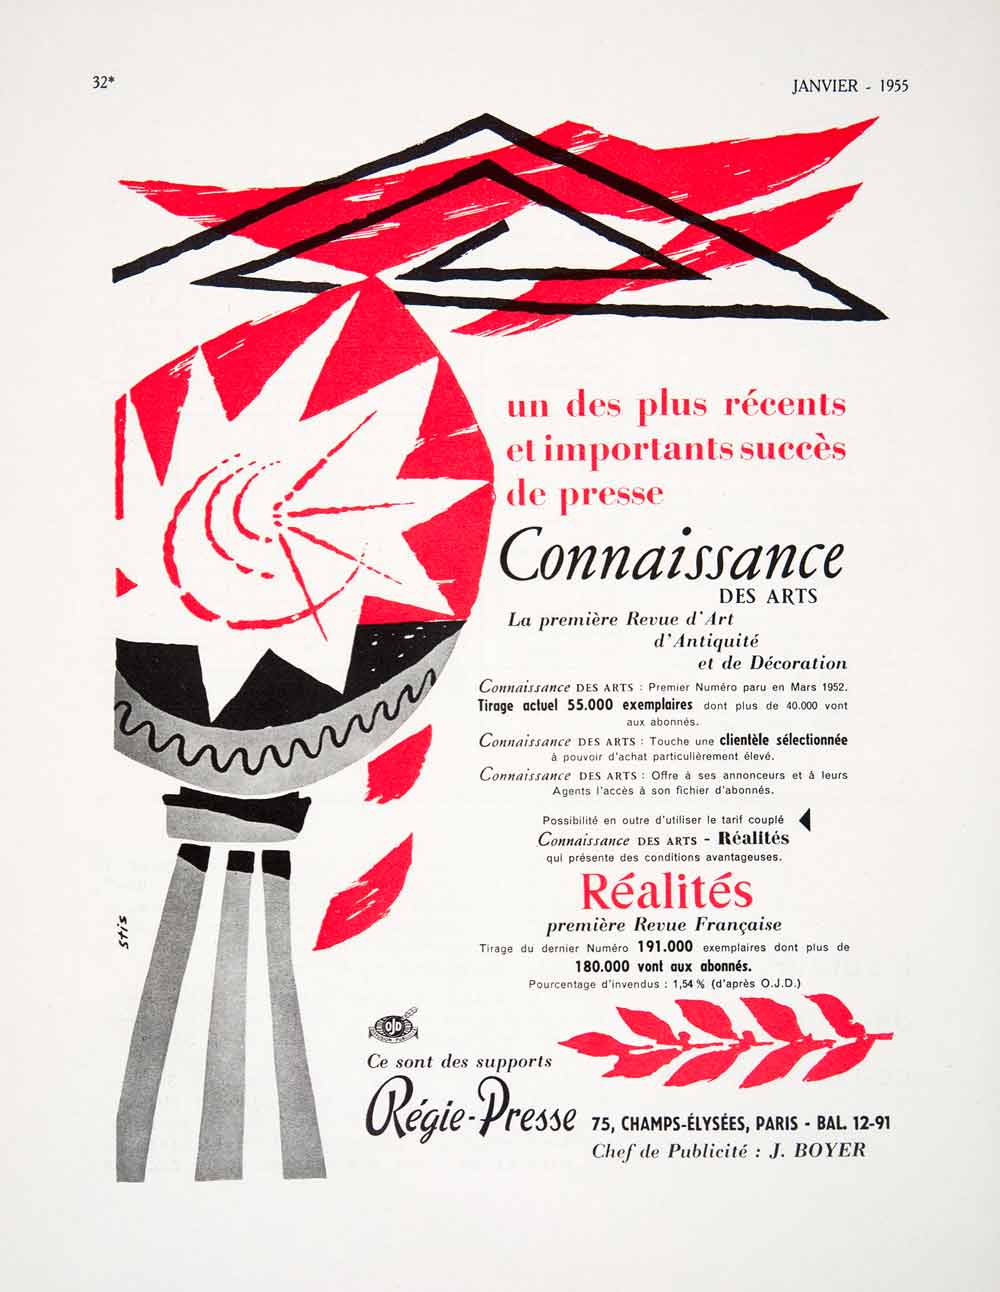 1955 Ad Magazine Connaissance des Arts French Advertising Stis Decoration VEN2